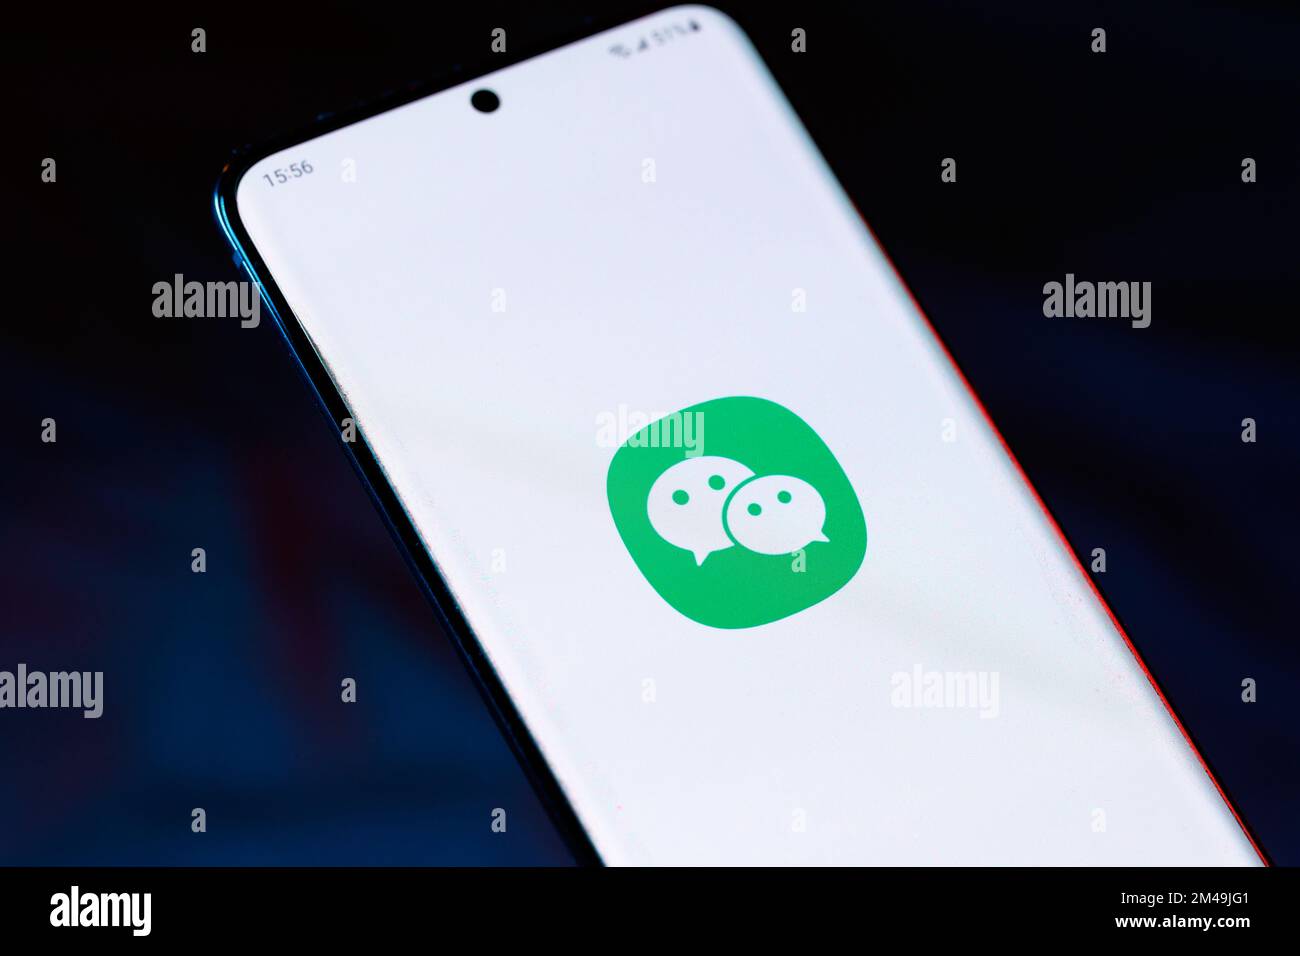 Il logo WeChat su uno smartphone. WeChat è un'app di messaggistica istantanea di proprietà di Tencent che molte comunità straniere utilizzano per comunicare con amici e familiari Foto Stock